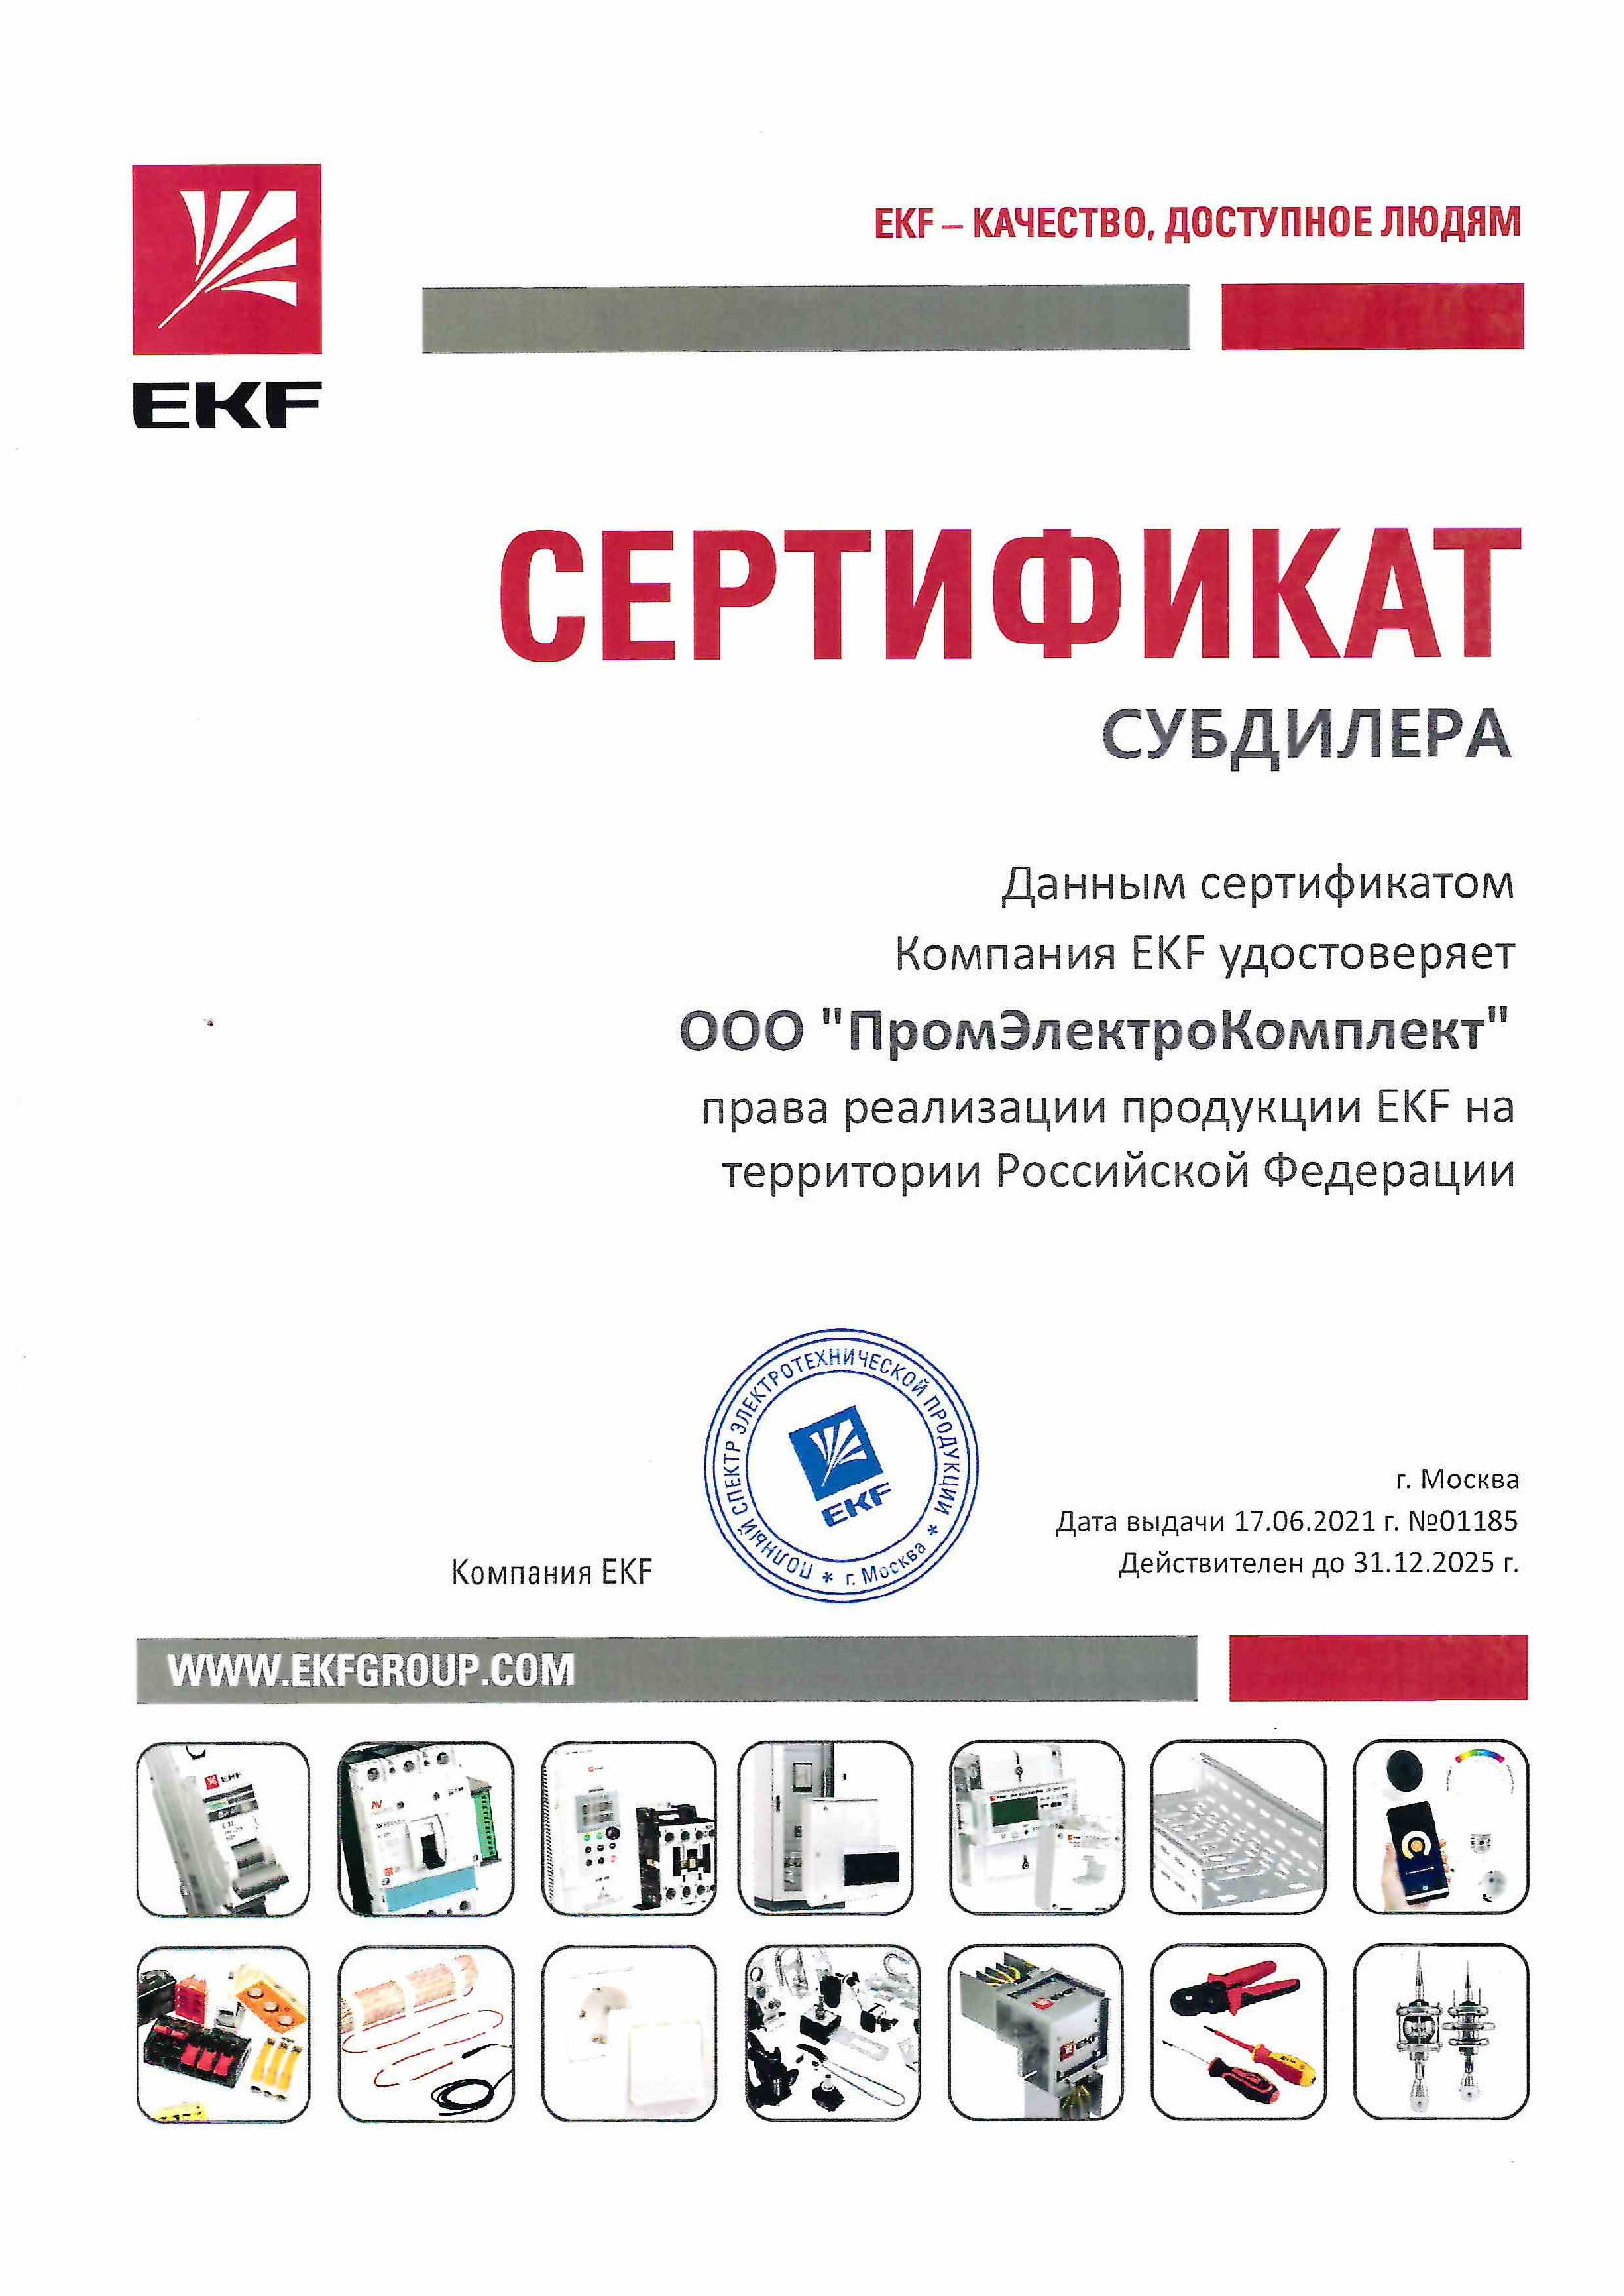 Сертификат партнера EKF